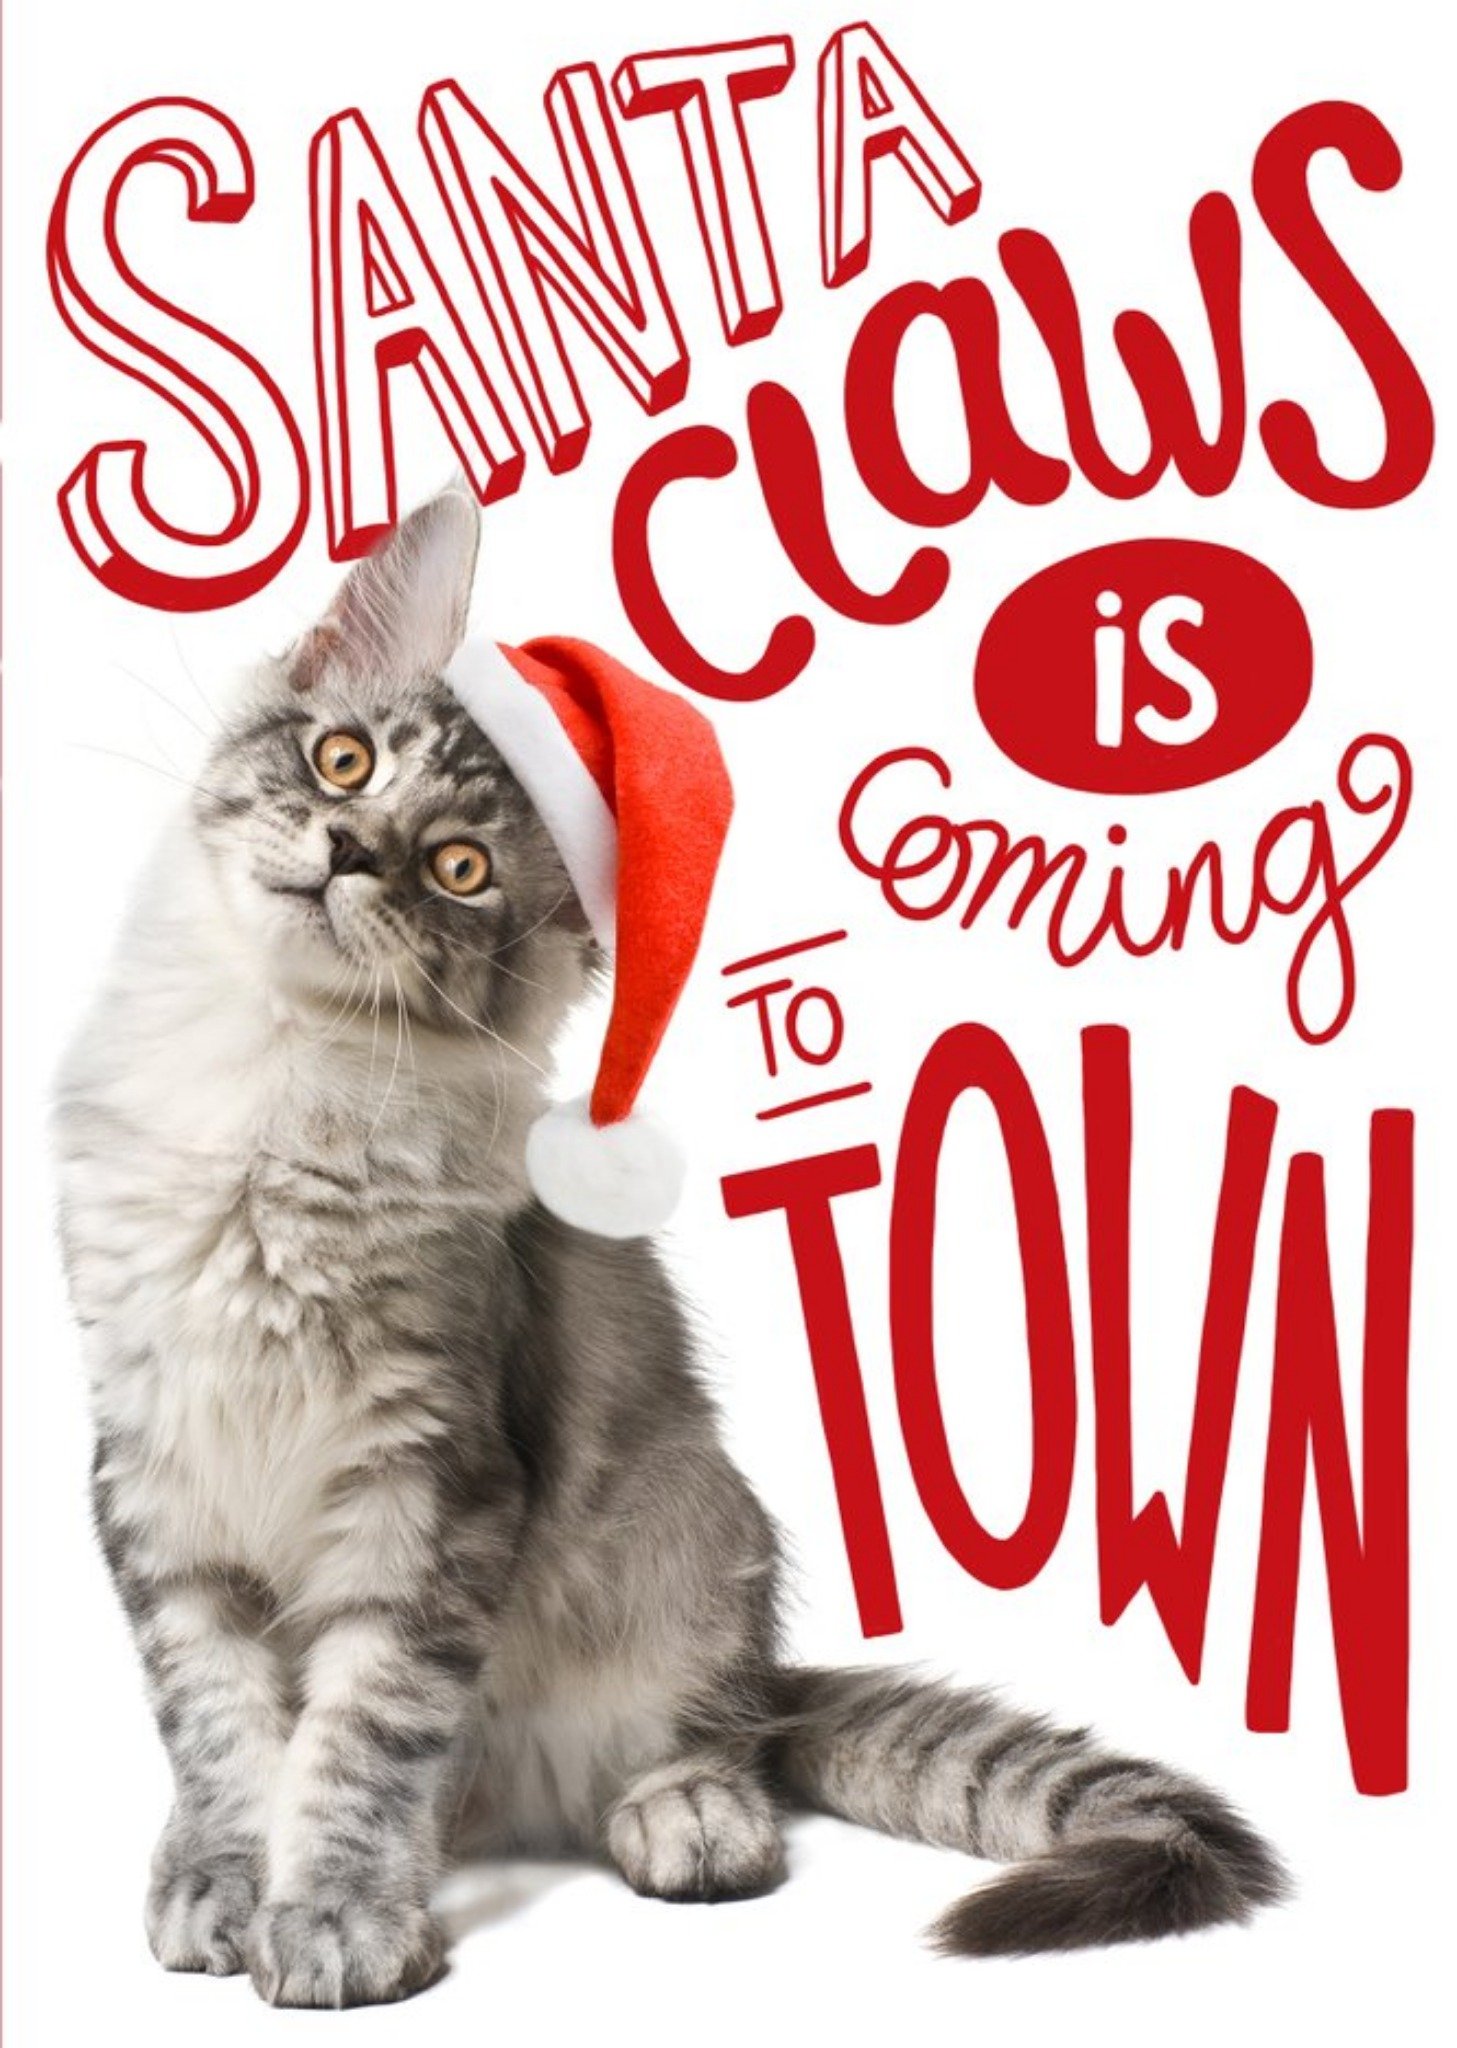 Moonpig Santa Claws Is Coming Christmas Greetings Card Ecard